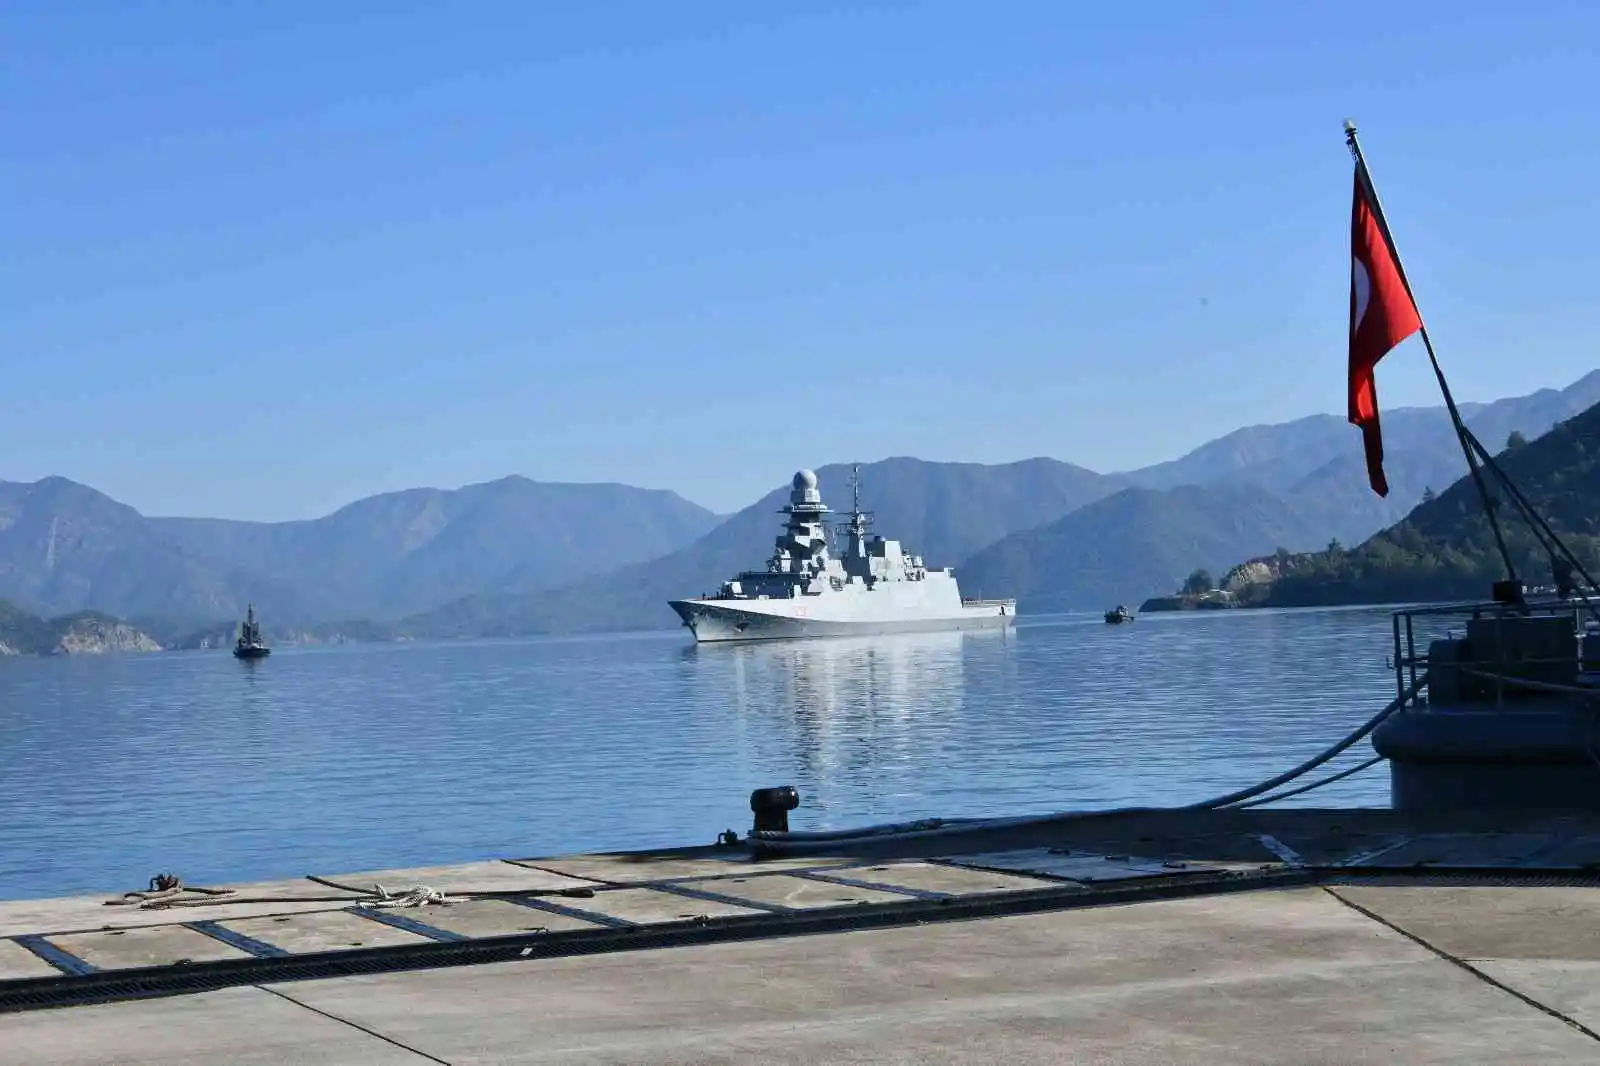 İtalyan Deniz Kuvvetlerine ait fırkateyn Aksaz’a liman ziyareti gerçekleştirdi
